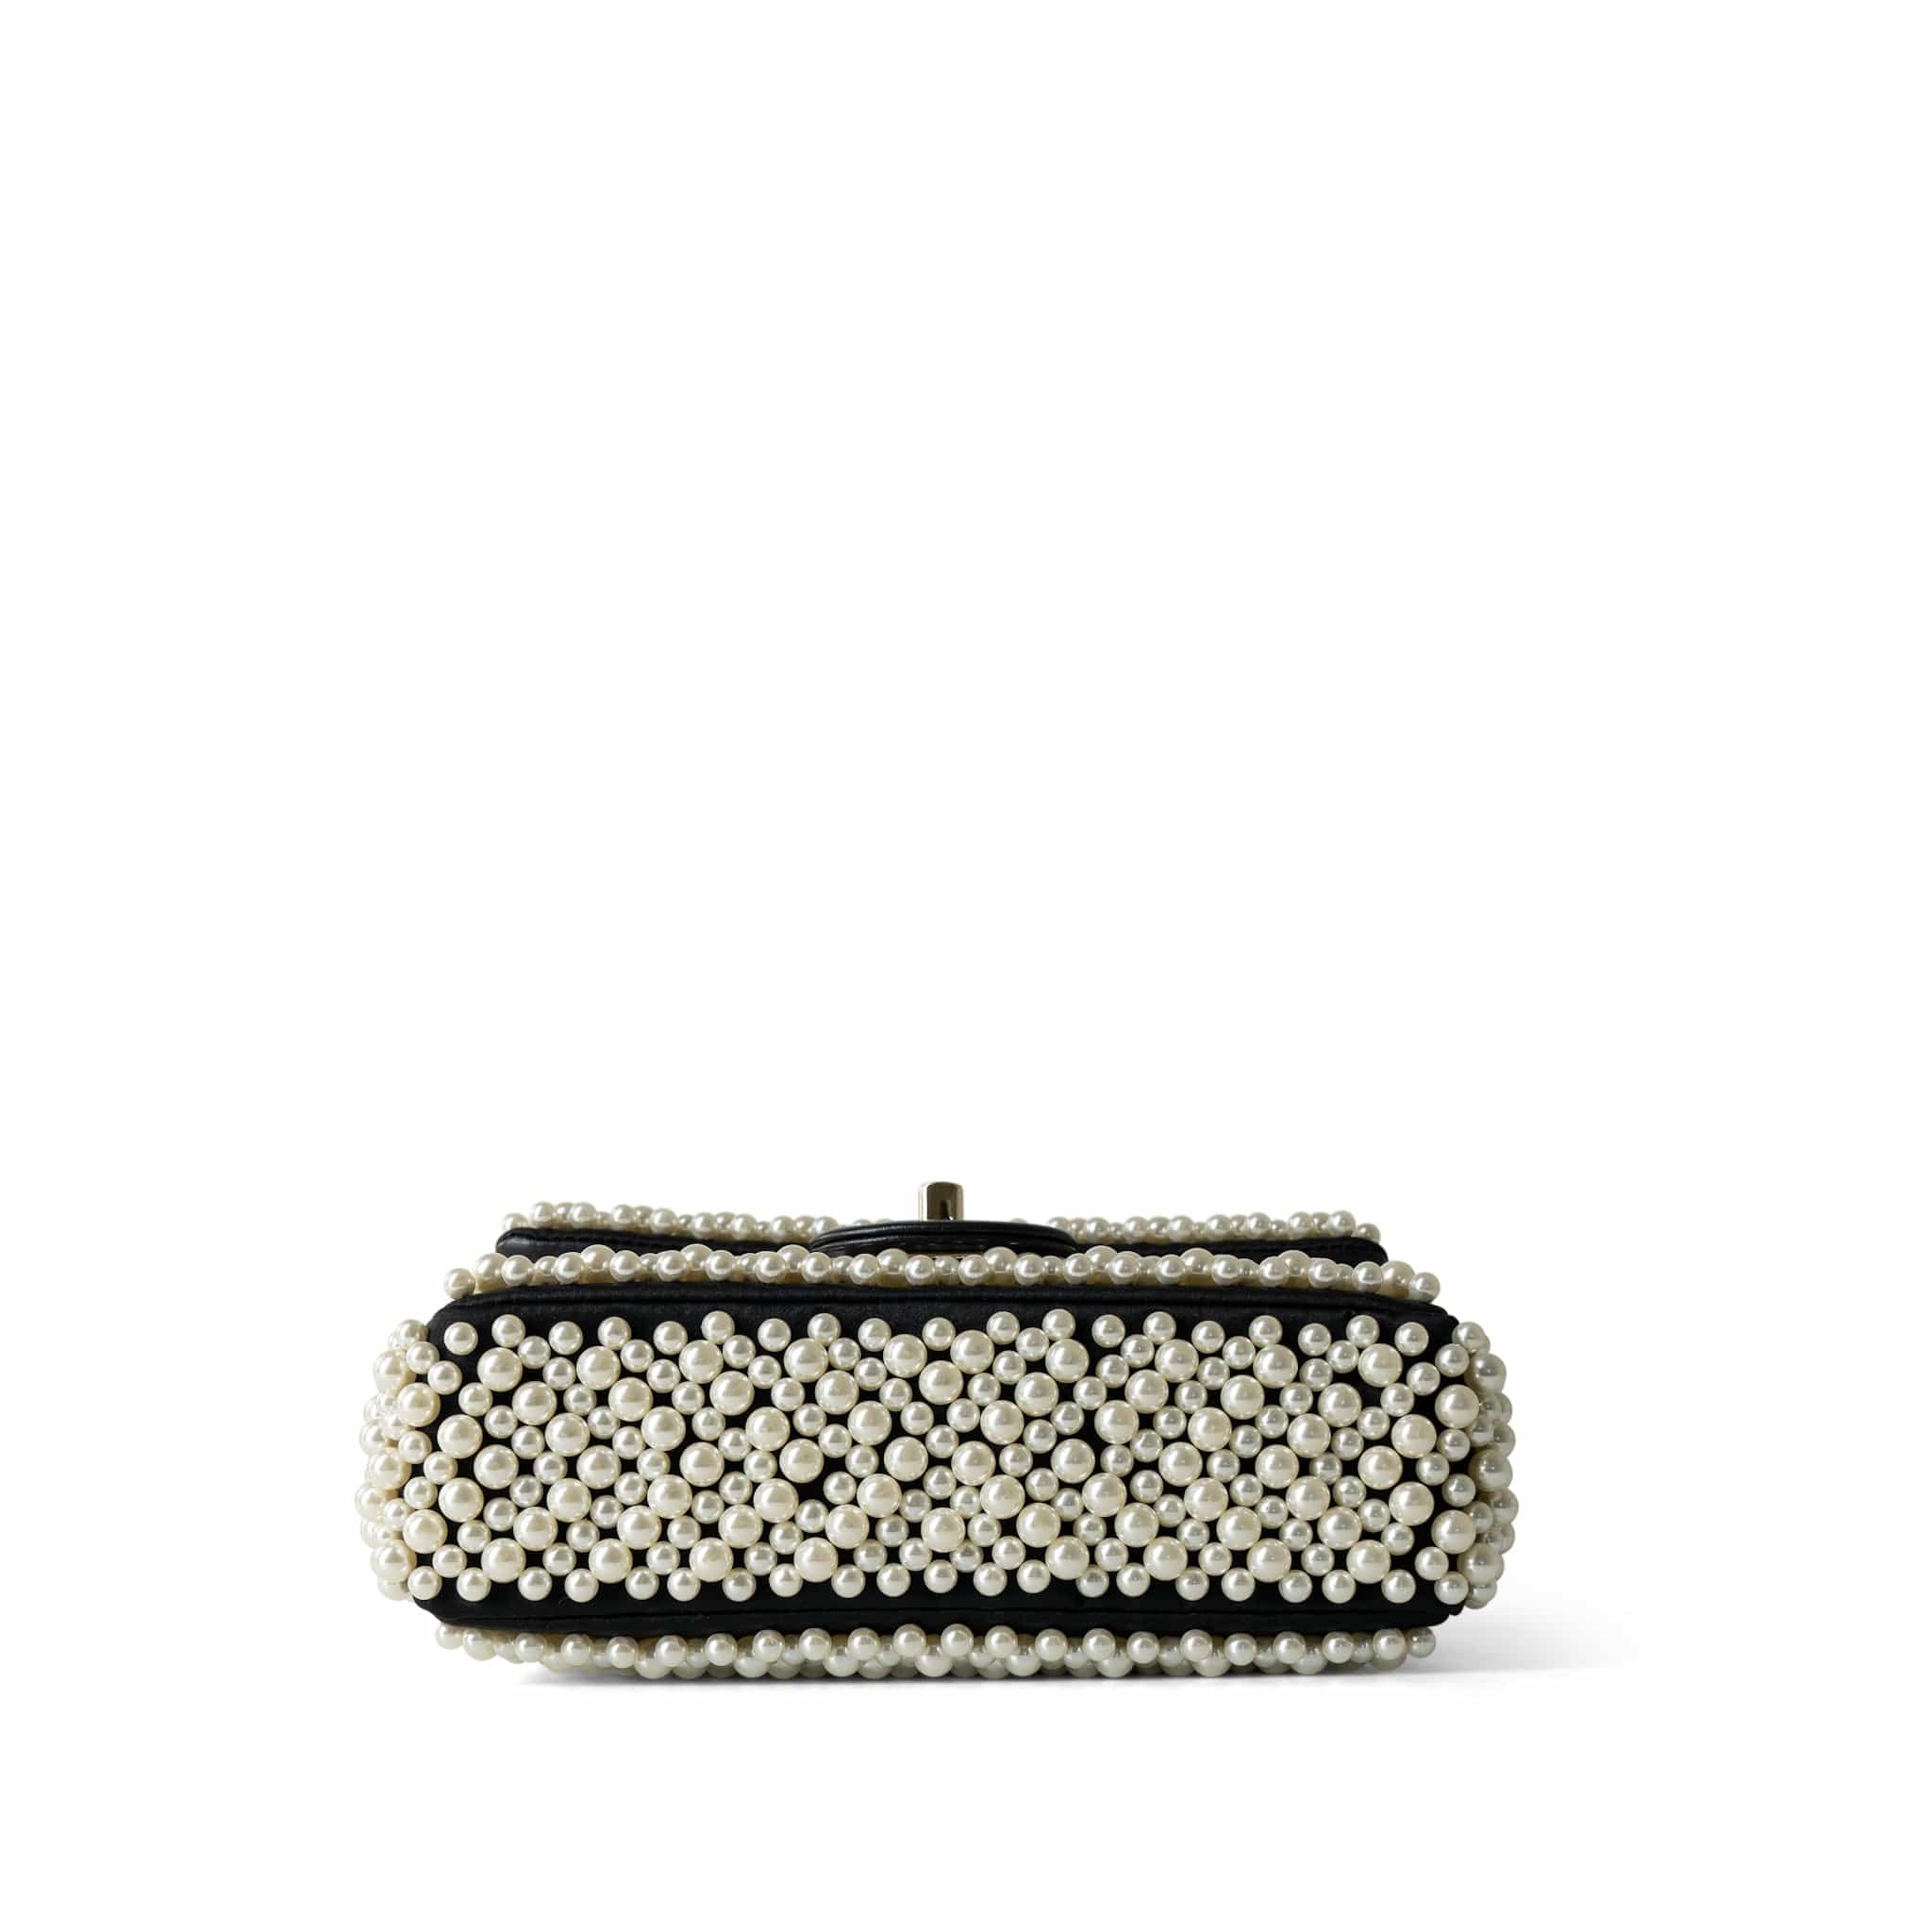 CHANEL Handbag Black 19S Pearl On Flap Mini Rectangular Bag Light Gold Hardware - Redeluxe